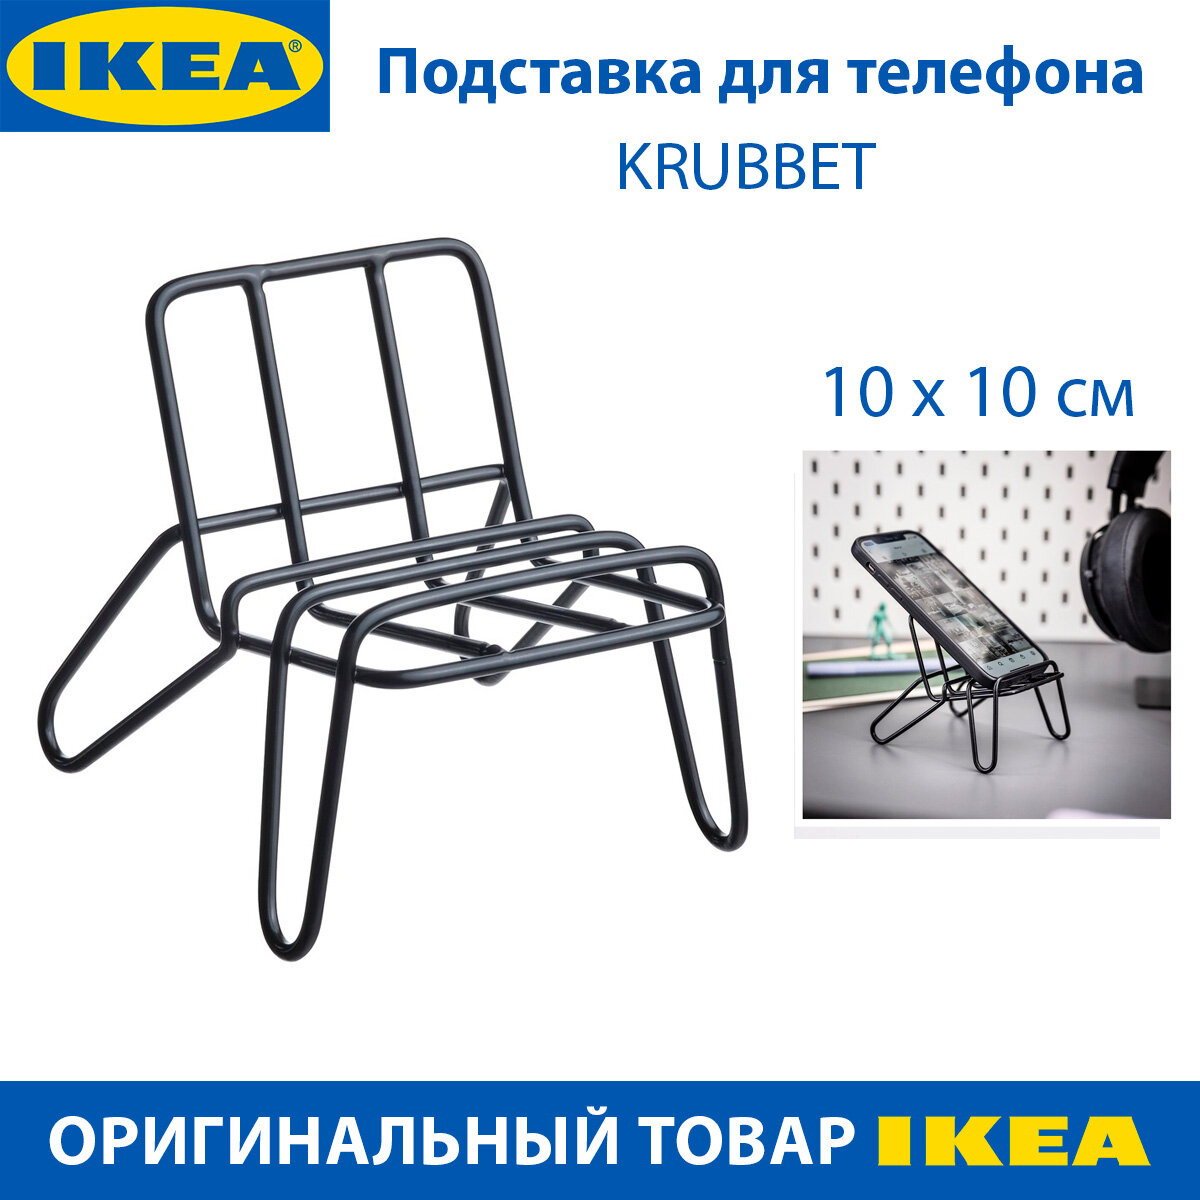 Подставка под телефон IKEA KRUBBET (круббет) стальная цвет чёрный 1 шт